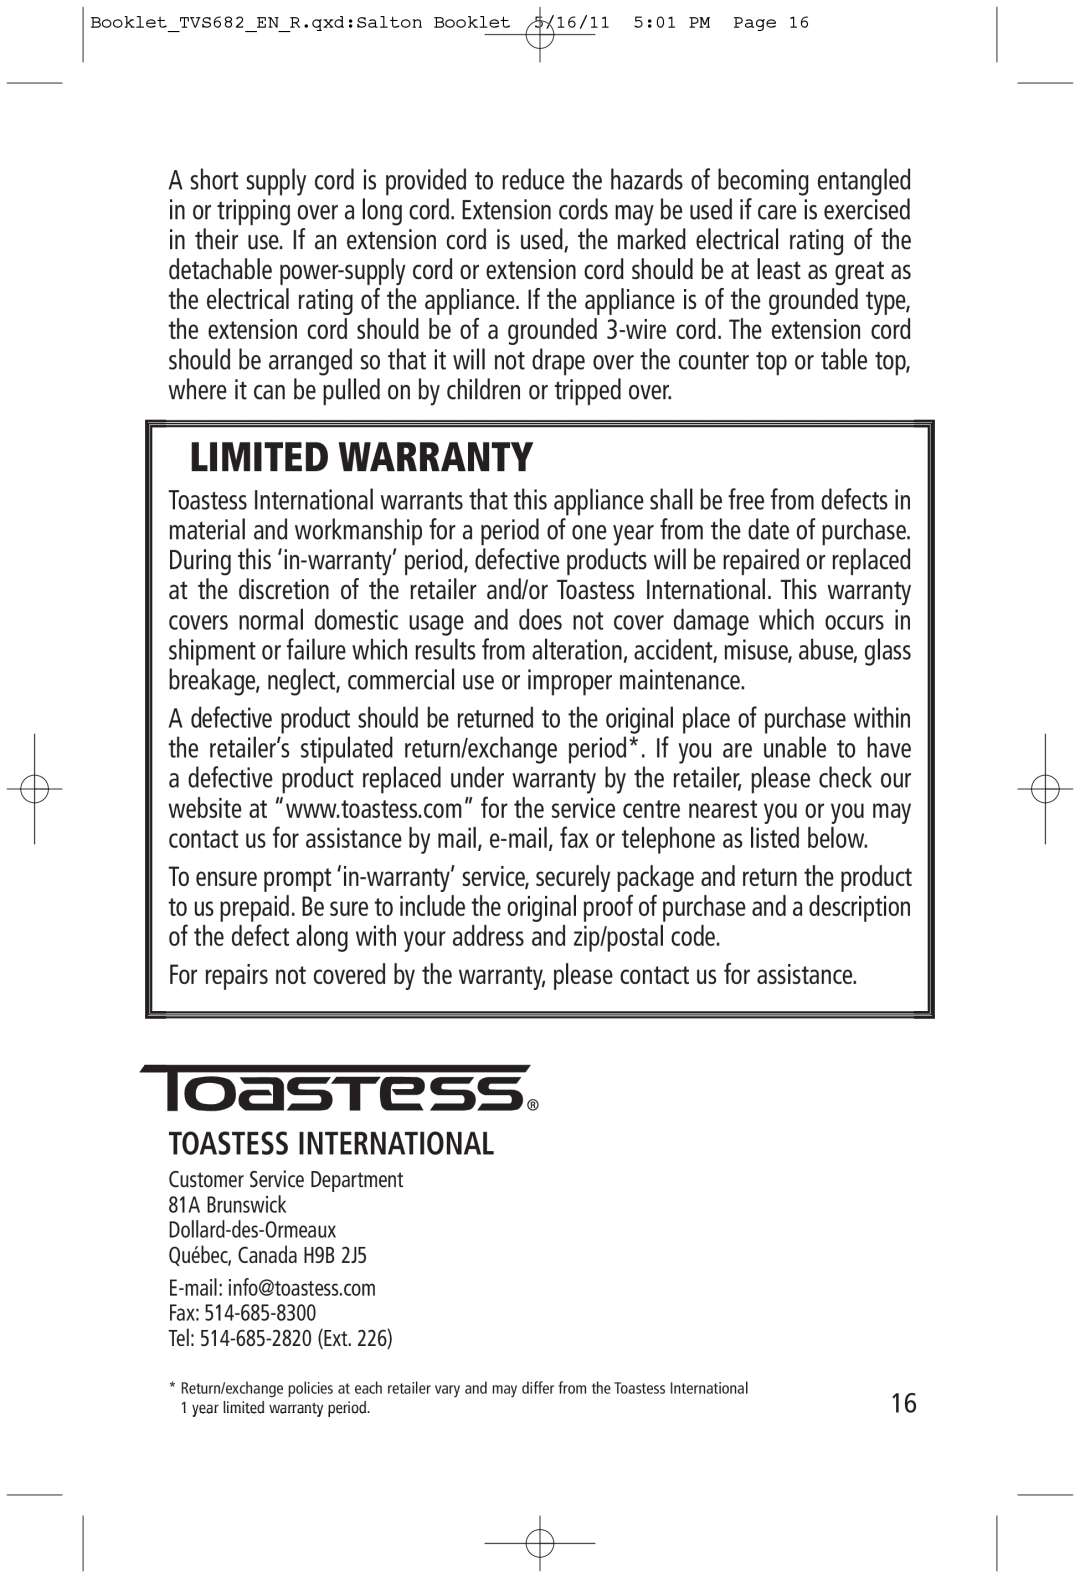 Toastess TVS682 manual Toastess International, Limited Warranty 